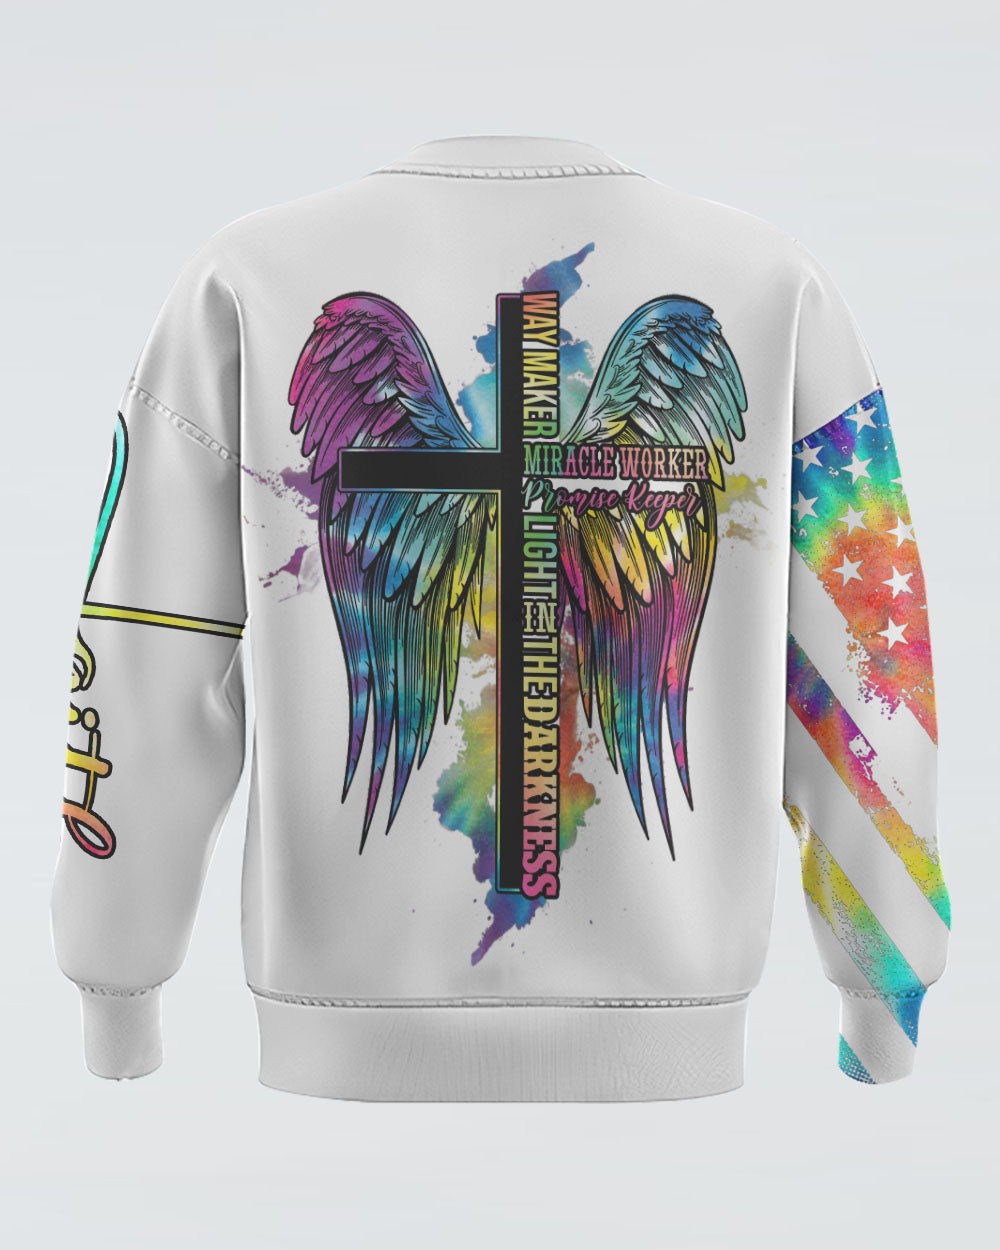 Way Maker Miracle Worker Promise Keeper Wings Tie Dye Women's Christian Sweatshirt